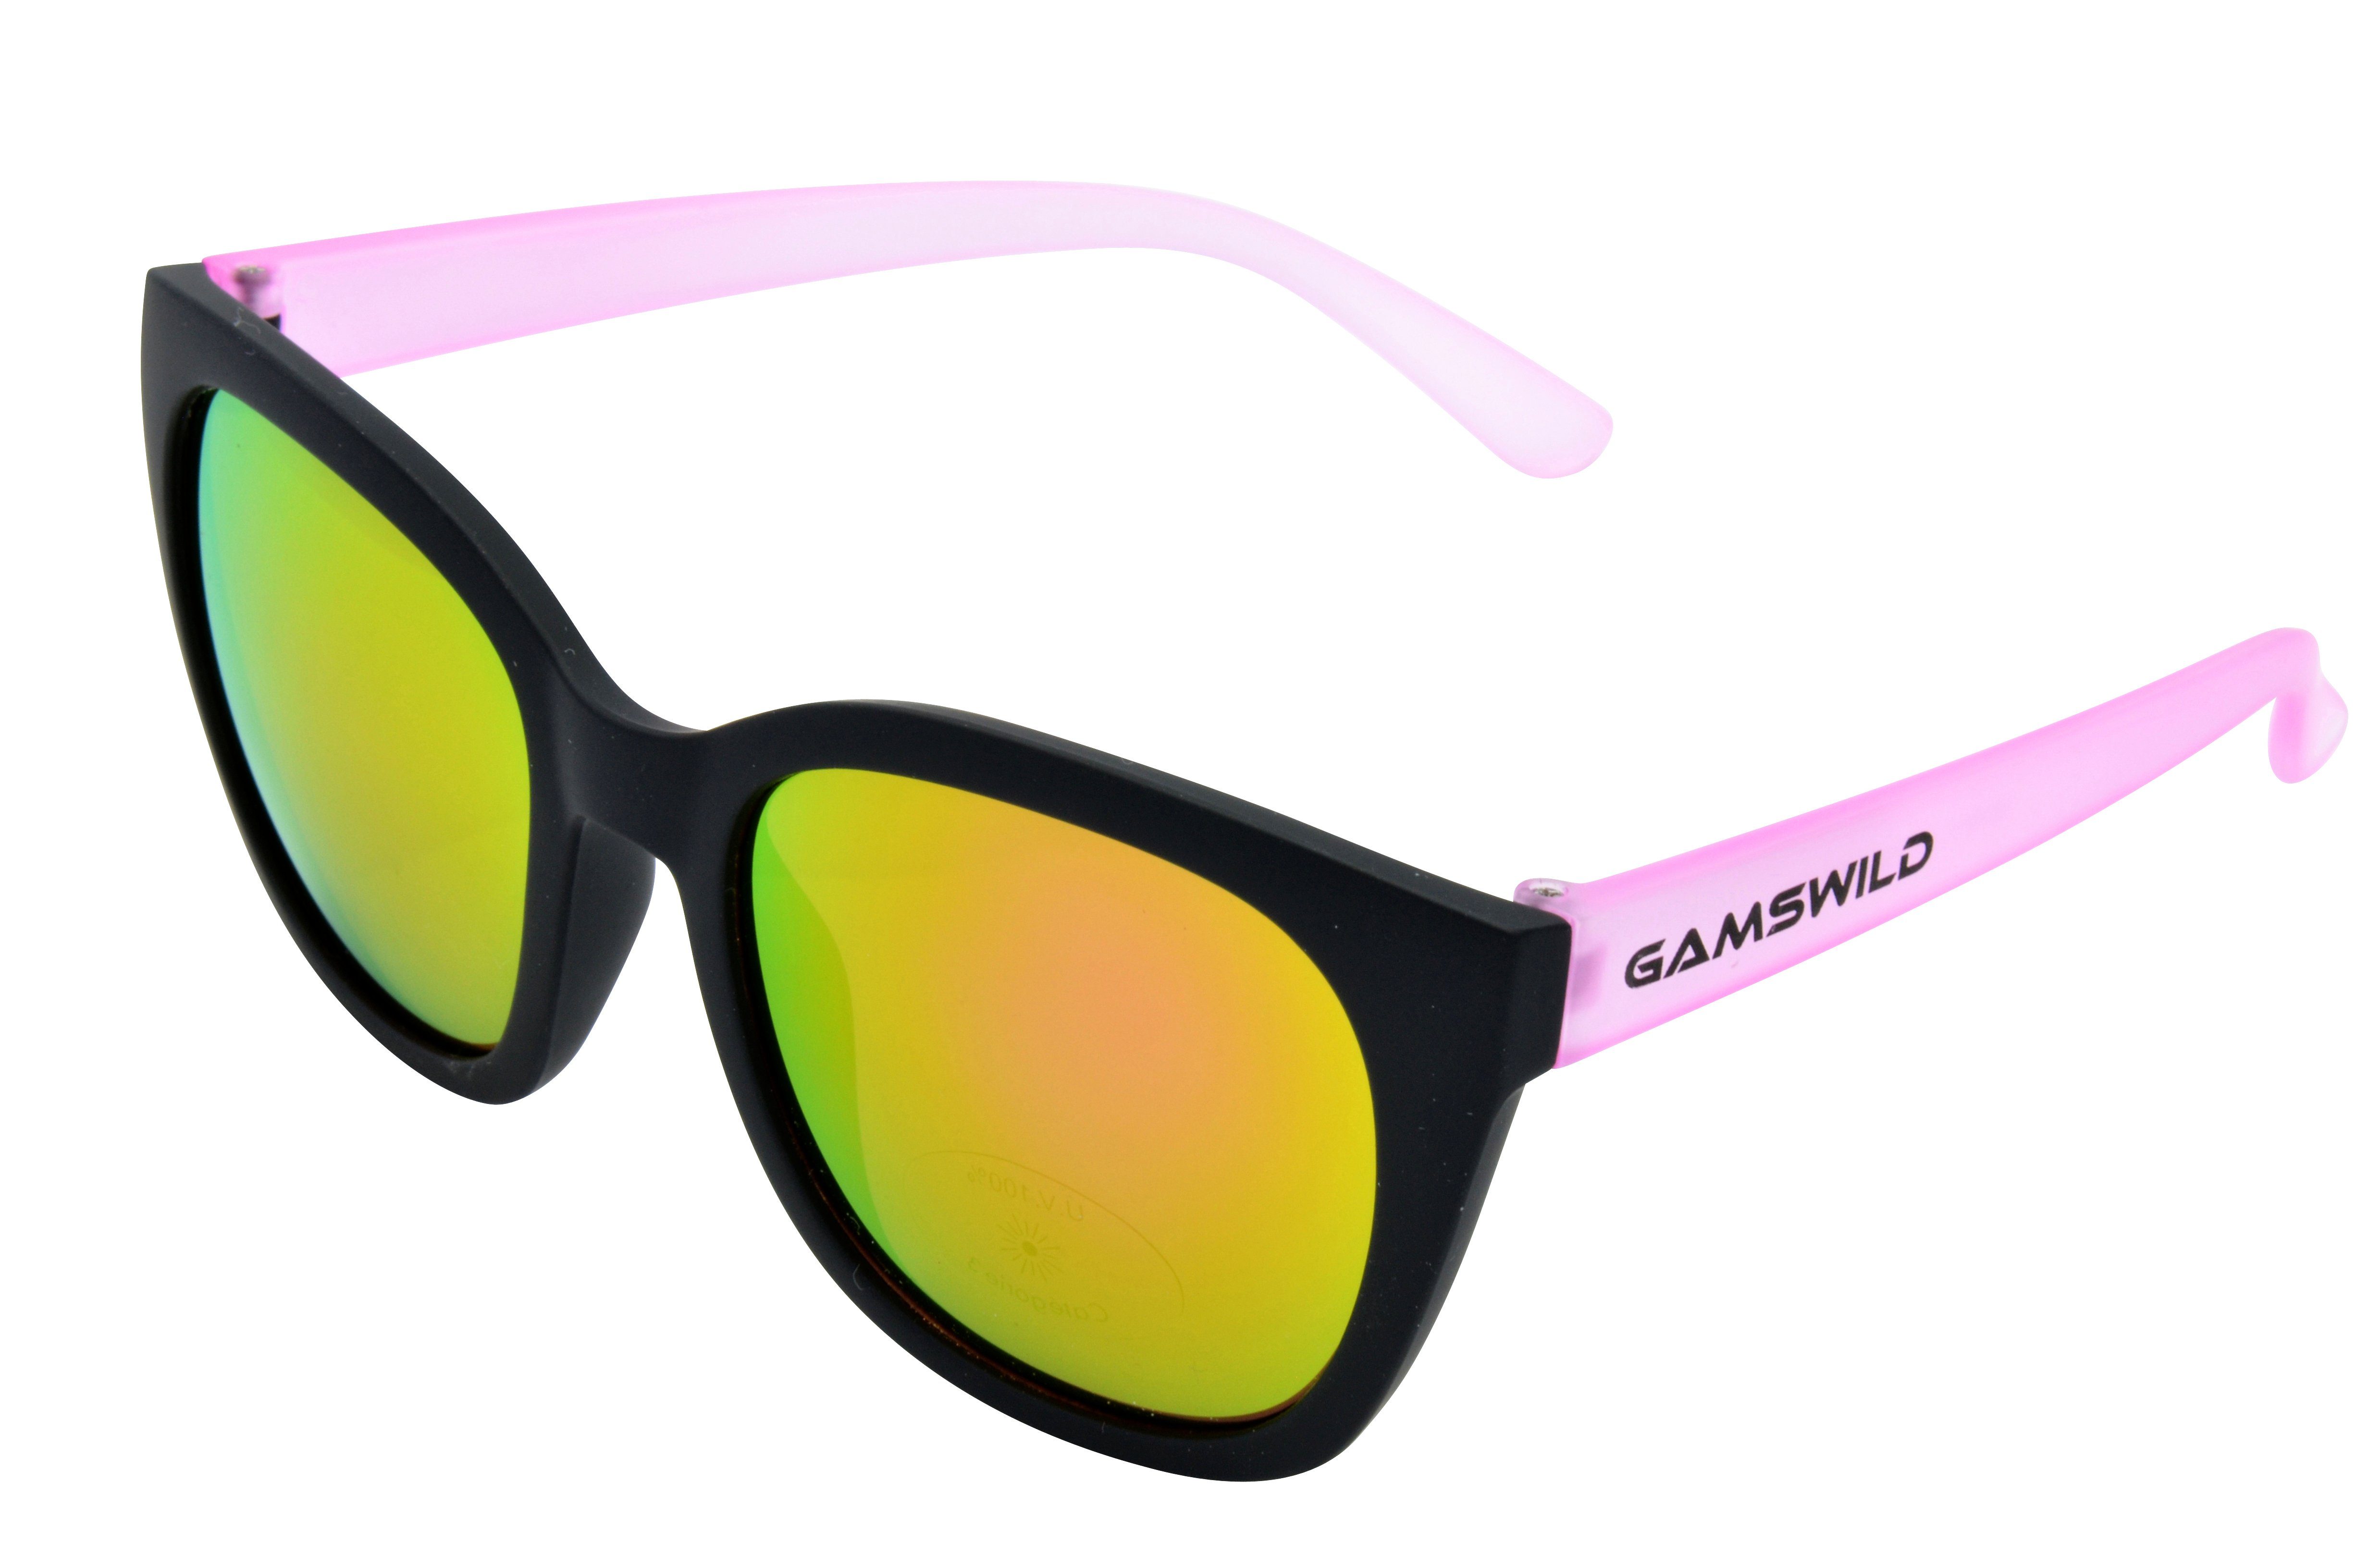 Gamswild Sonnenbrille WJ7517 GAMSKIDS Jugendbrille 8-18 Jahre Kinderbrille  Mädchen Damen kids Unisex, blau, pink, grau halbtransparenter Rahmen